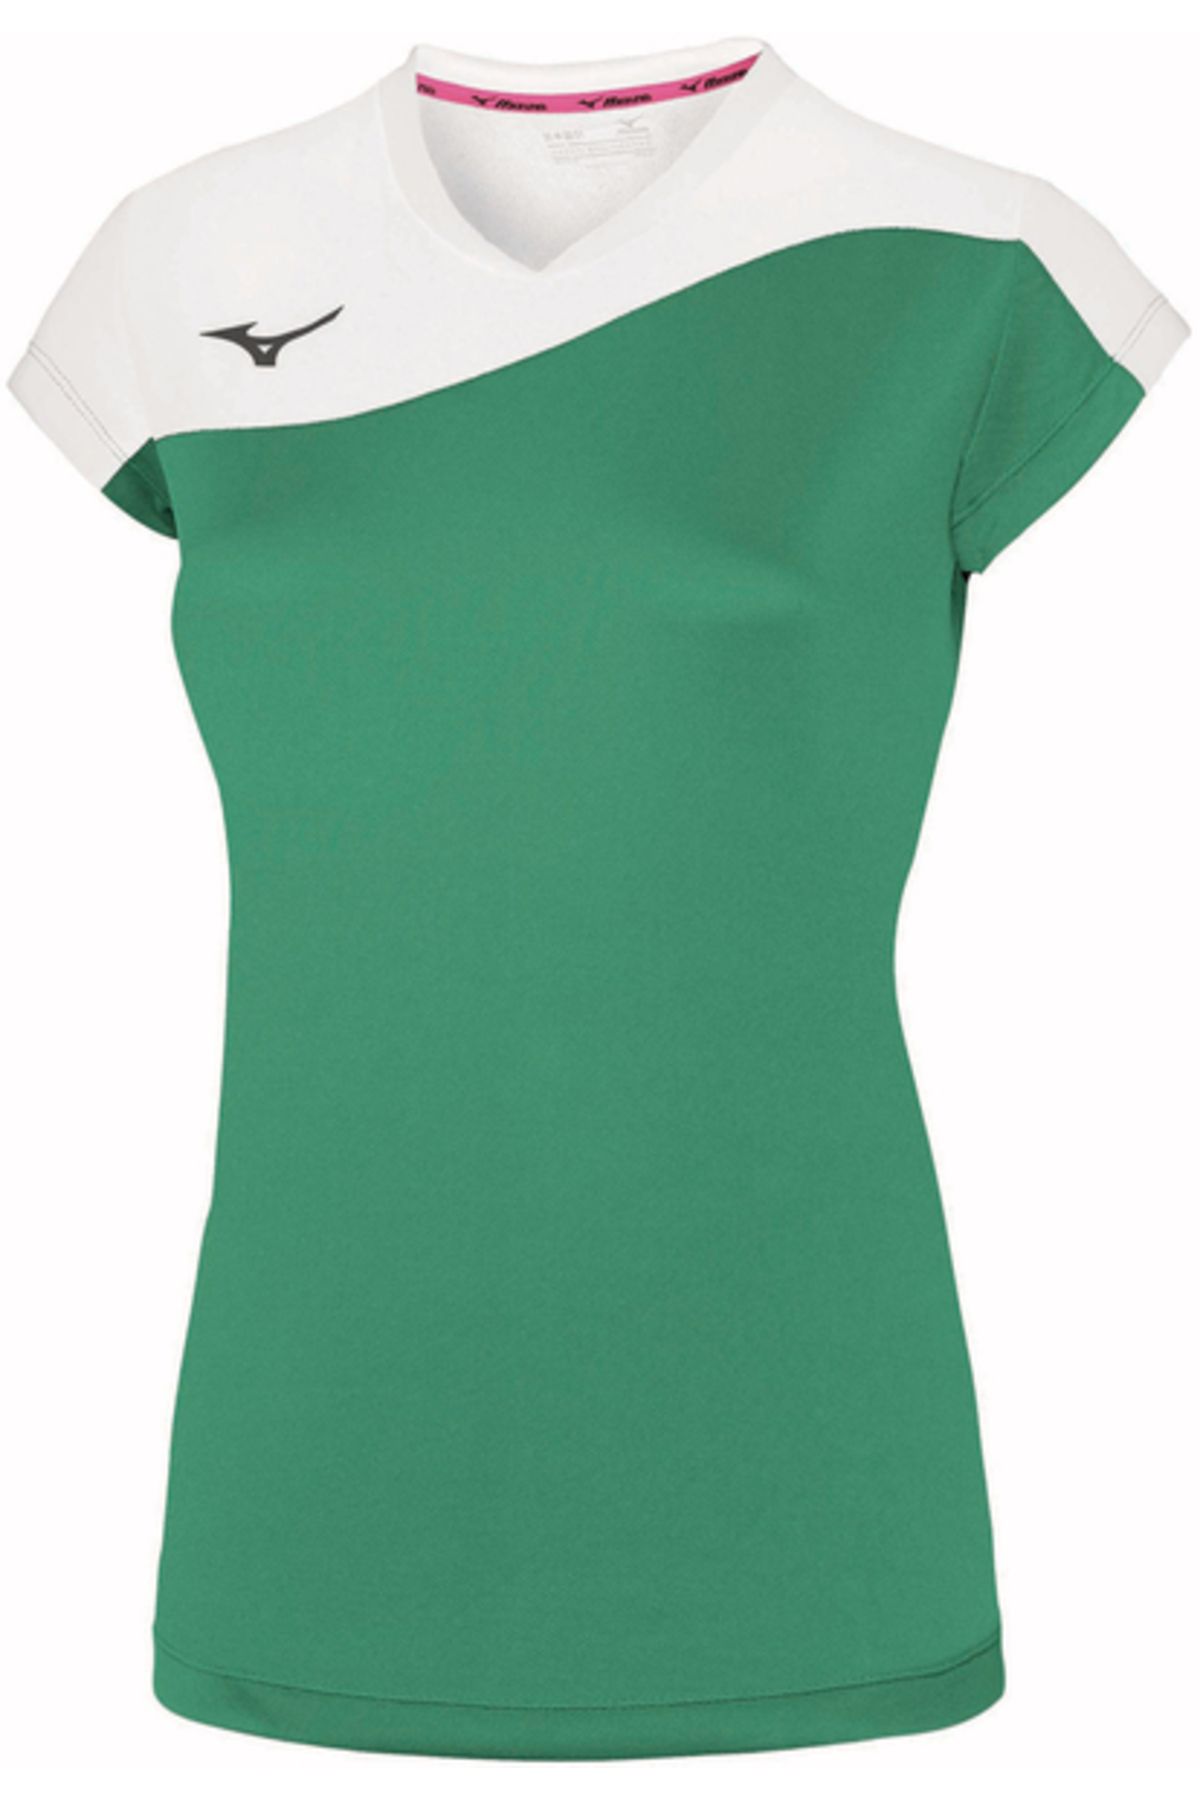 Mizuno Authentic Myou Tee Kadın Tişört Yeşil